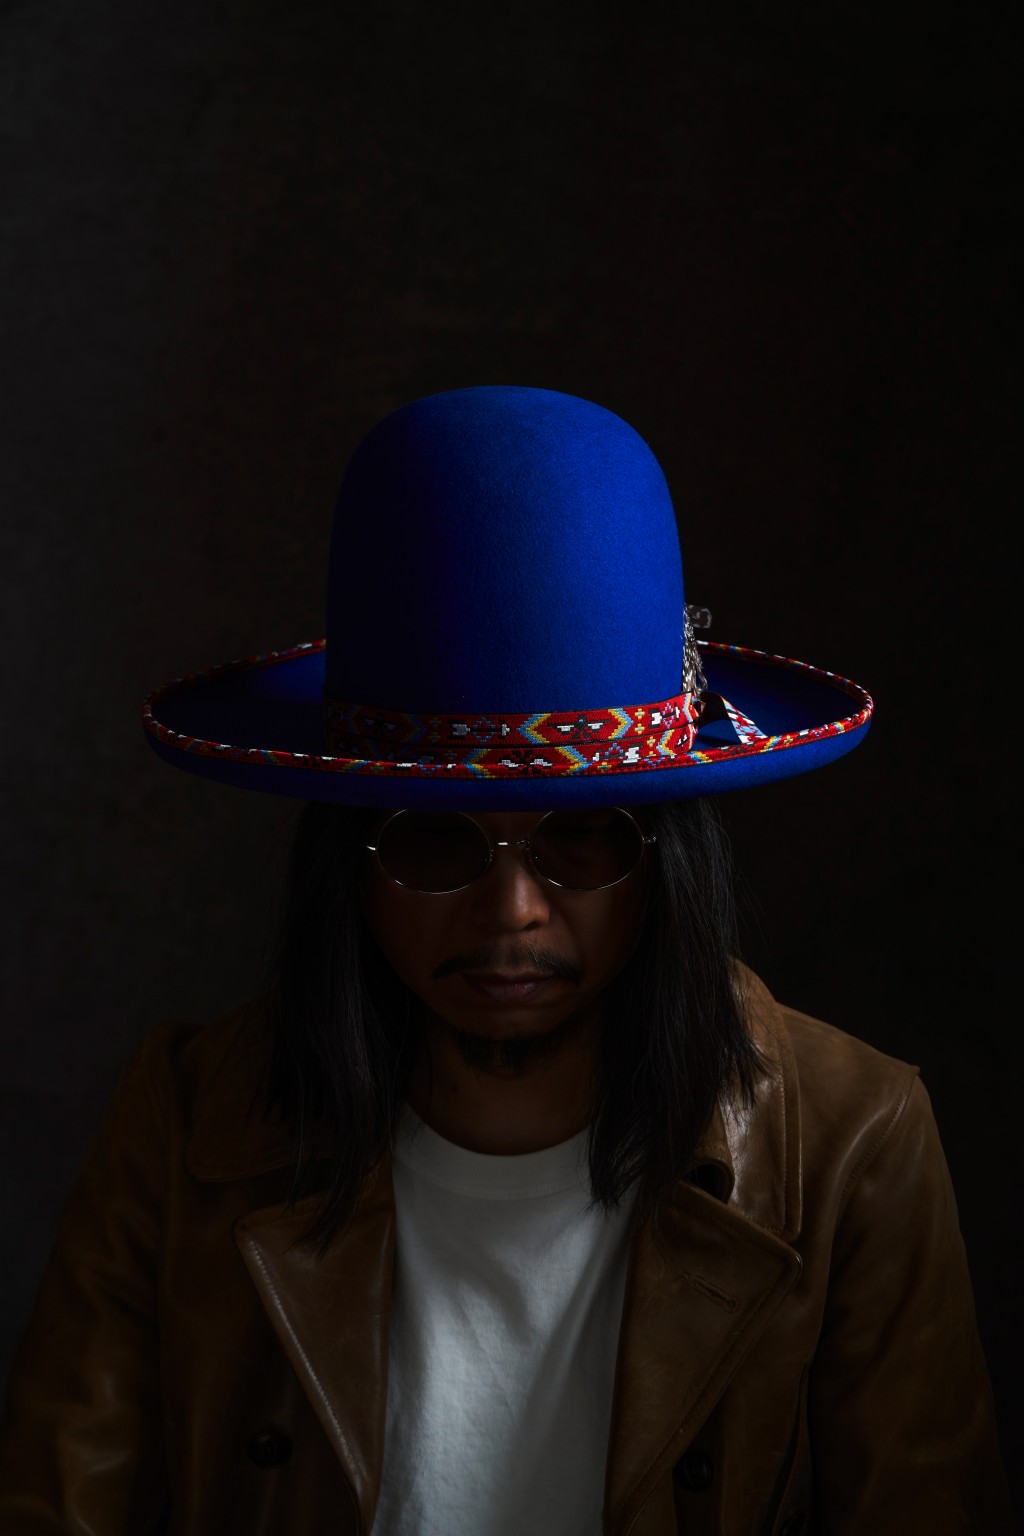 王双骏说每顶帽都有不同的音乐故事。